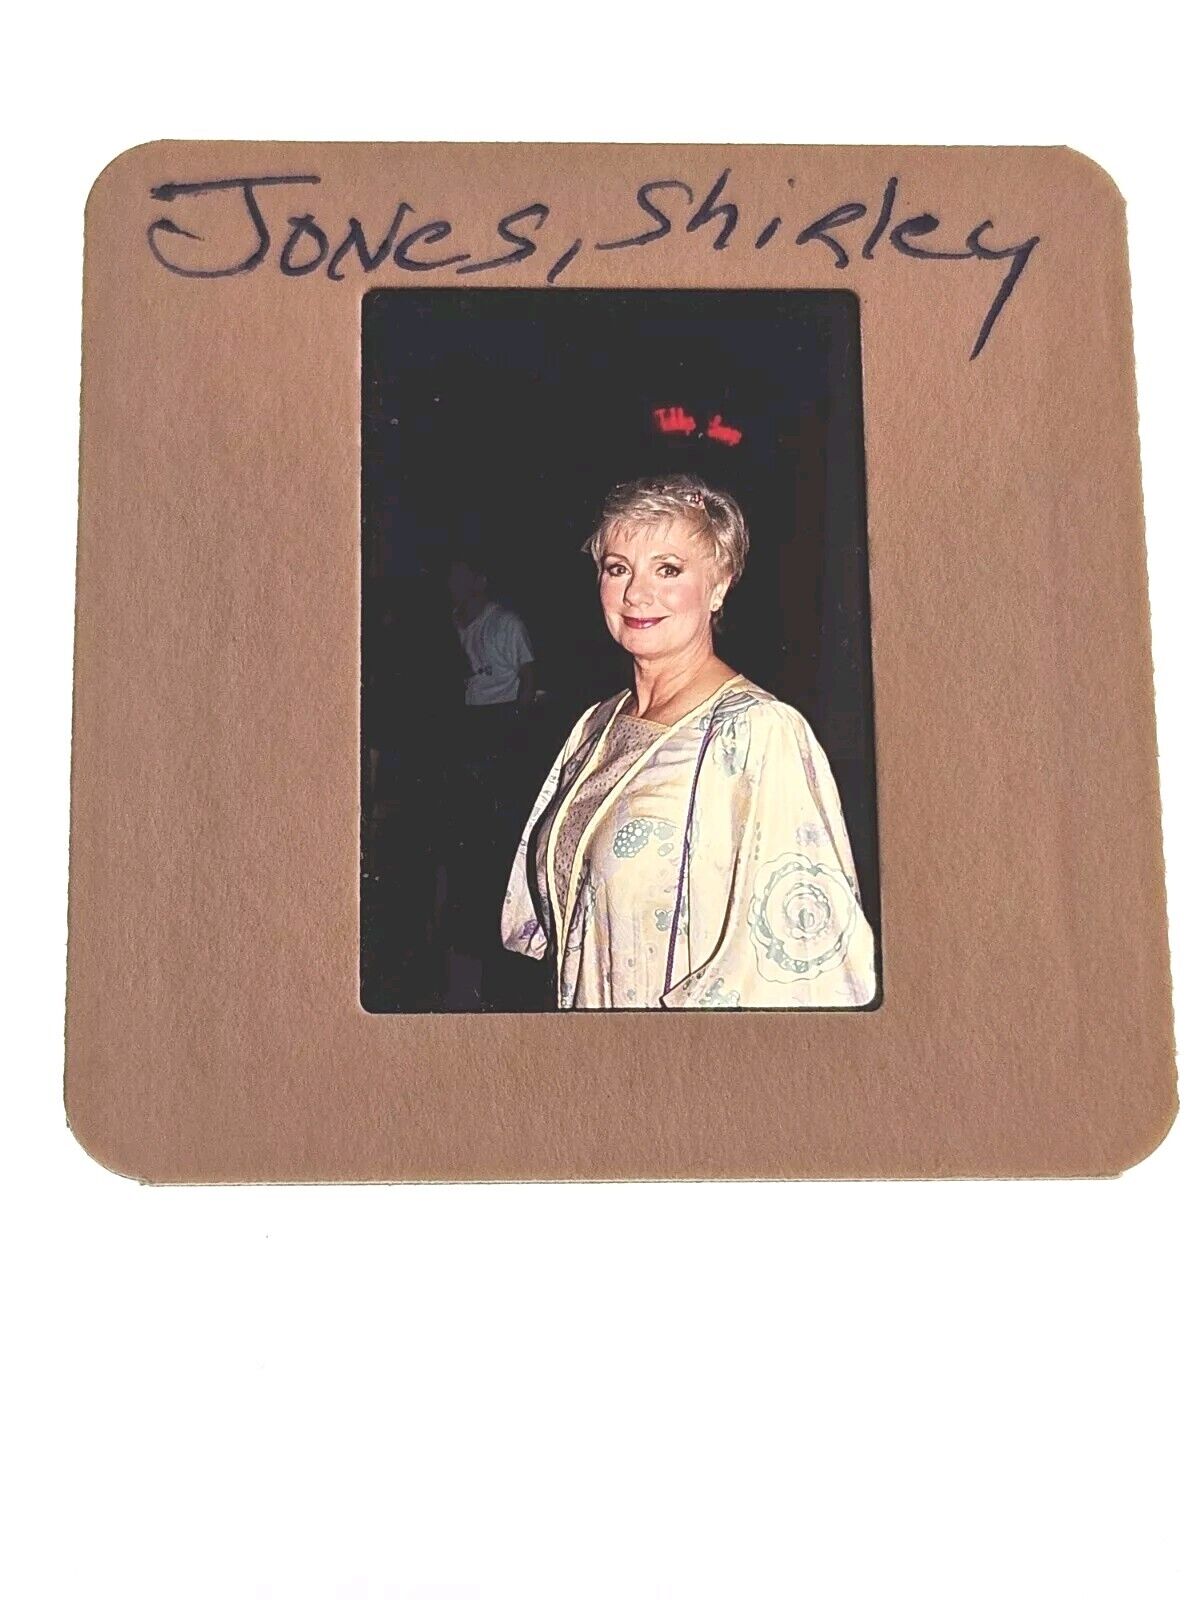 SHIRLEY JONES ACTRESS PHOTO 35MM FILM SLIDE